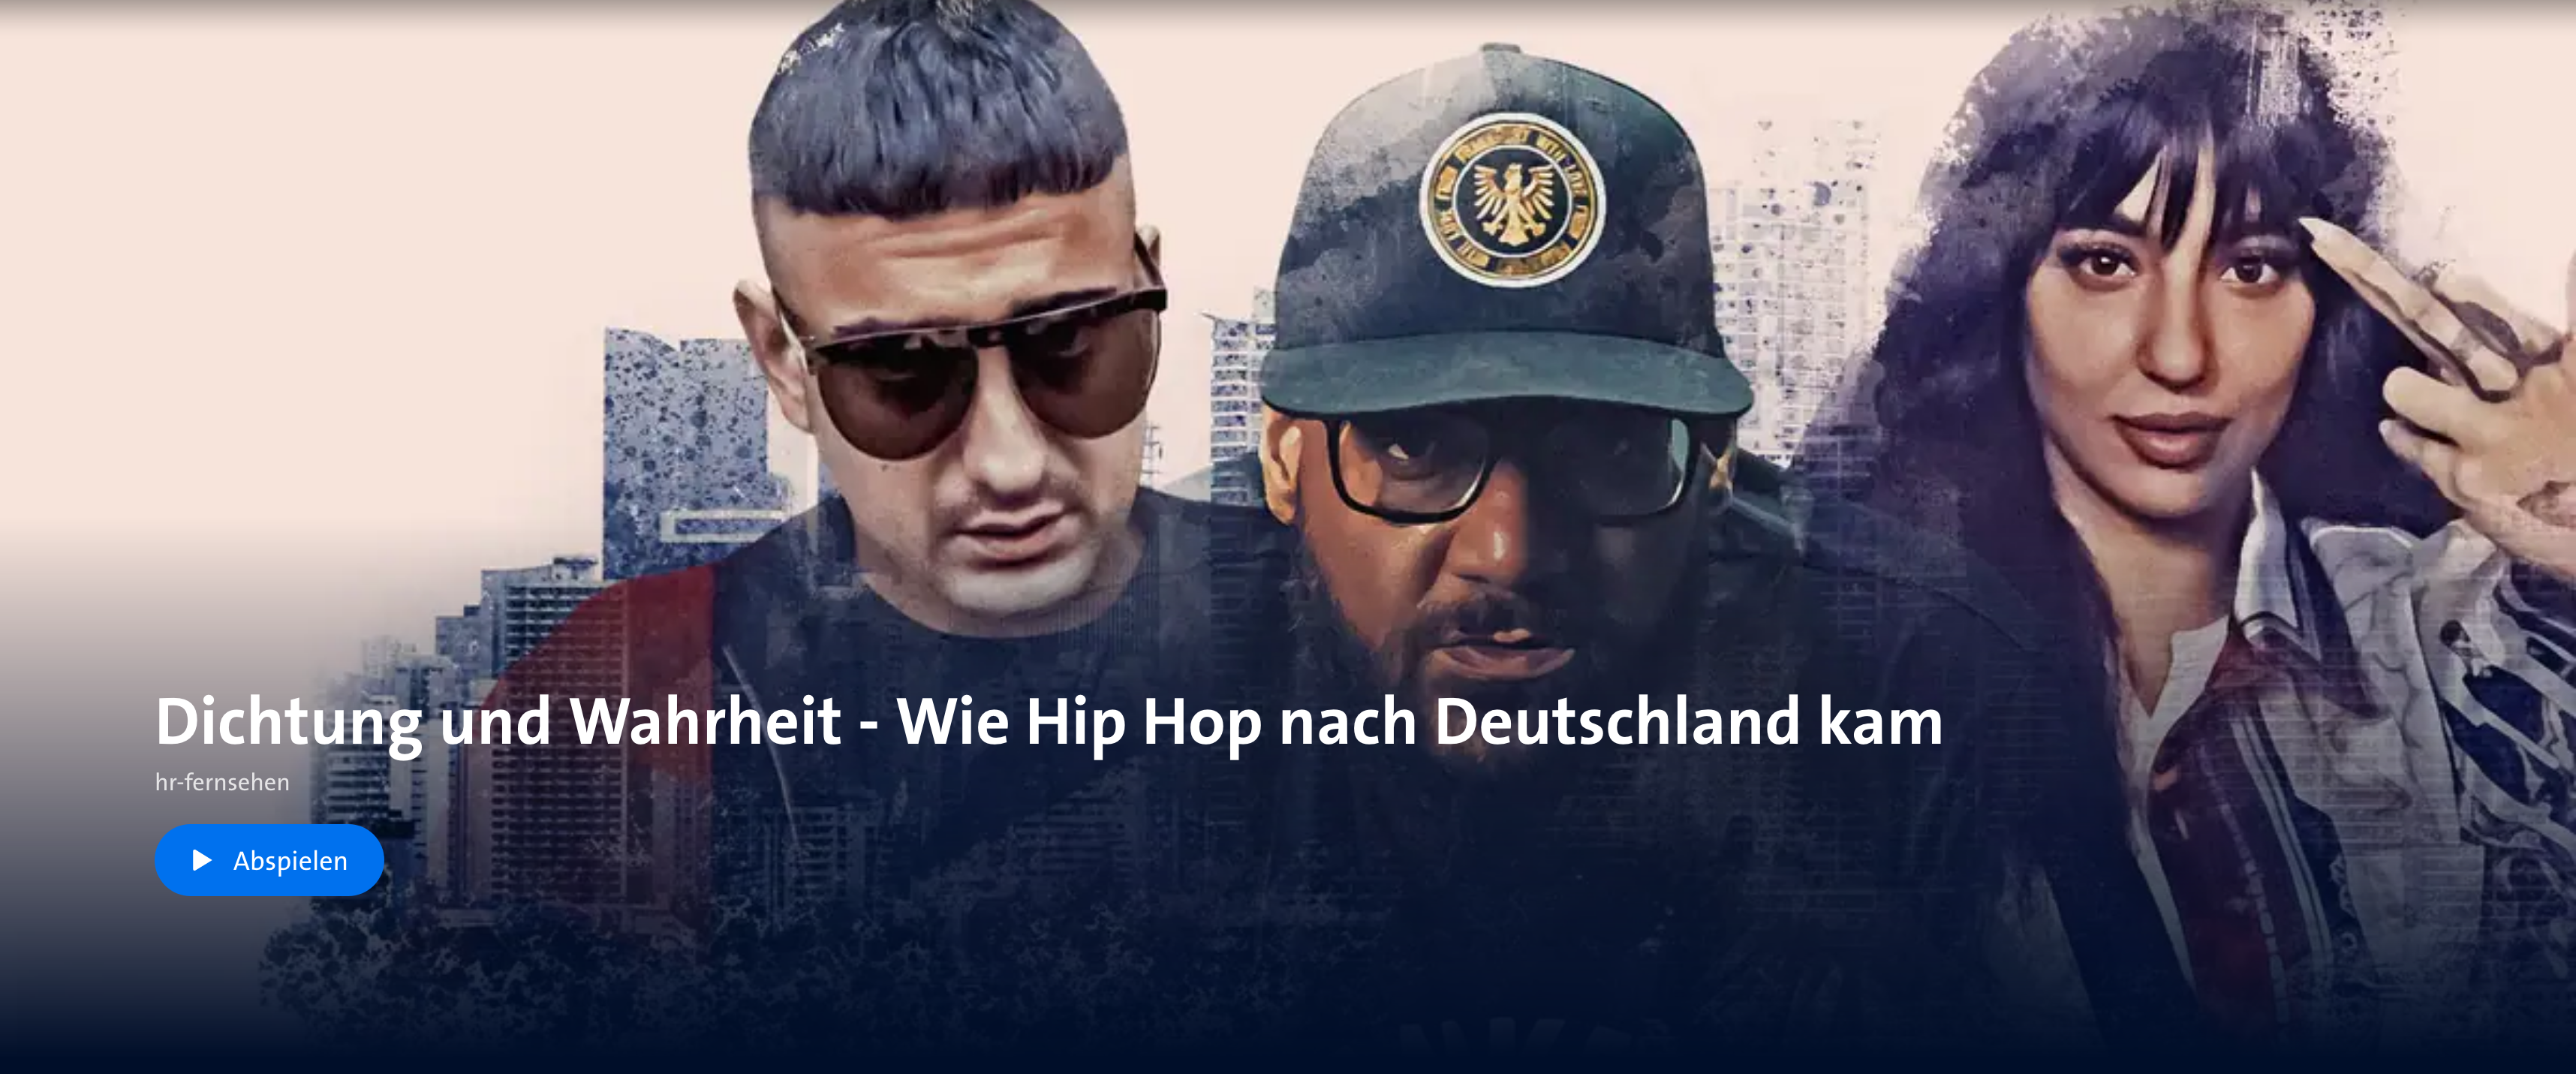 Dichtung und Wahrheit HipHop Deutschland Frankfurt Dokumentation